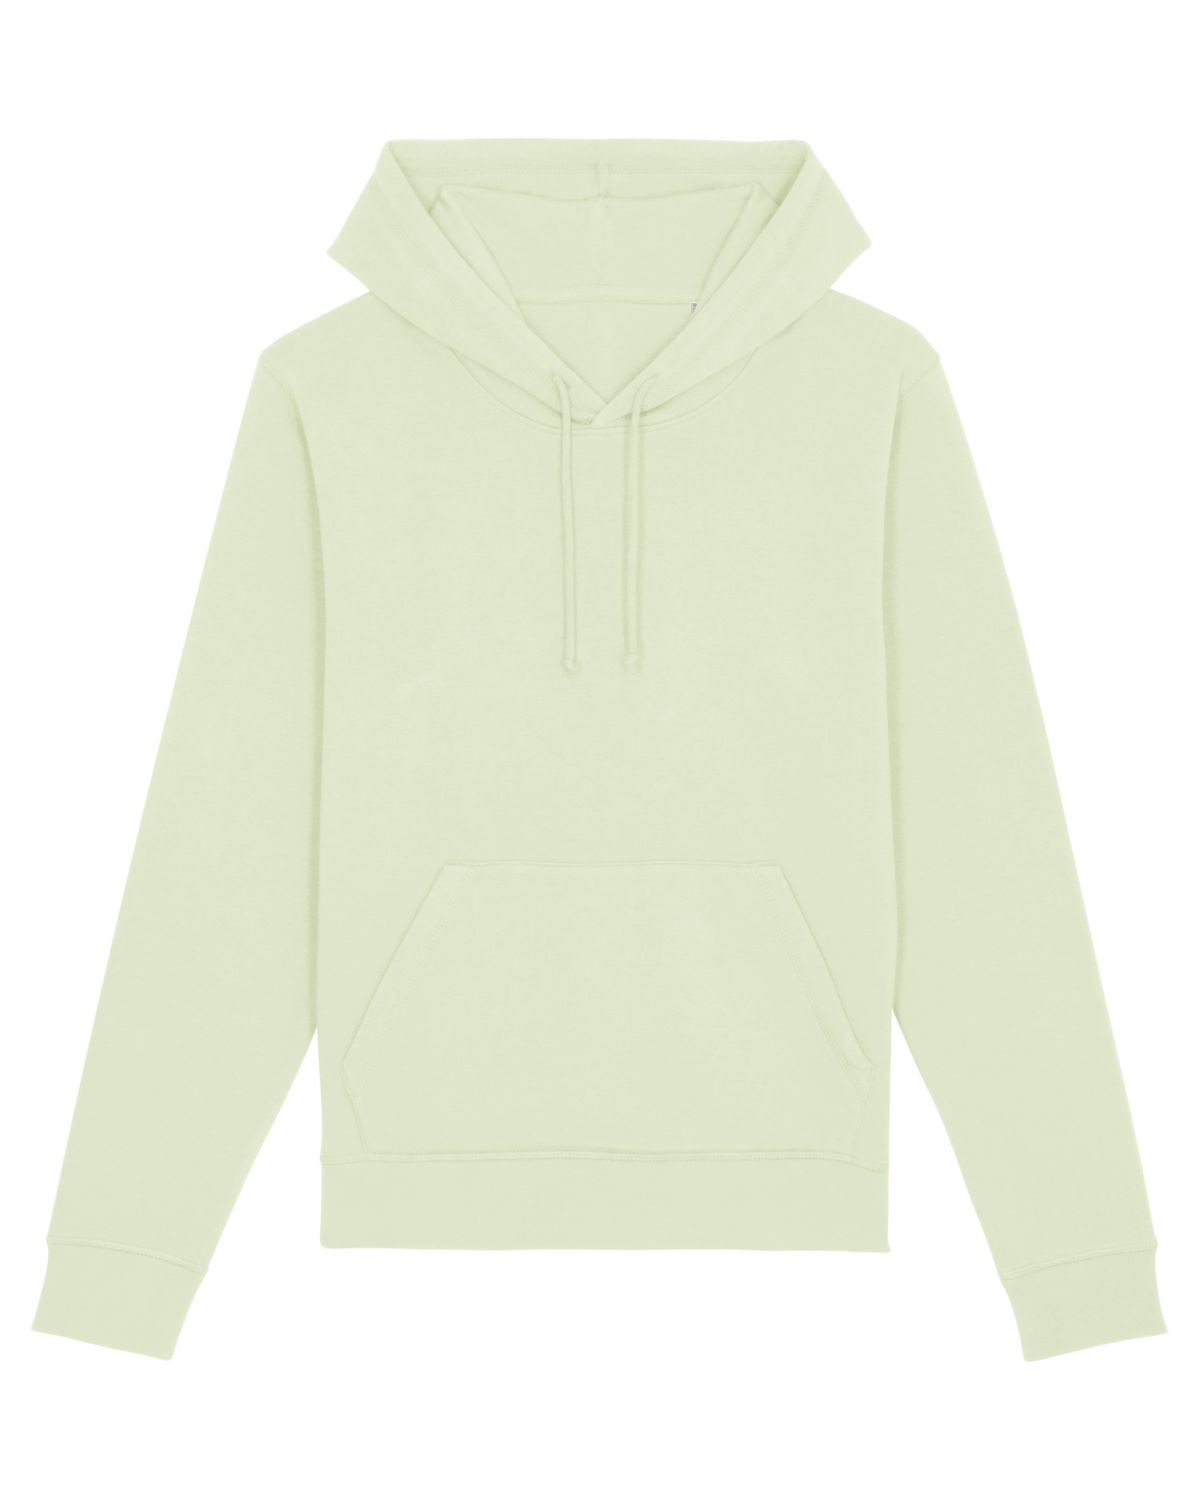 The Essential Unisex Hoodie Sweatshirt